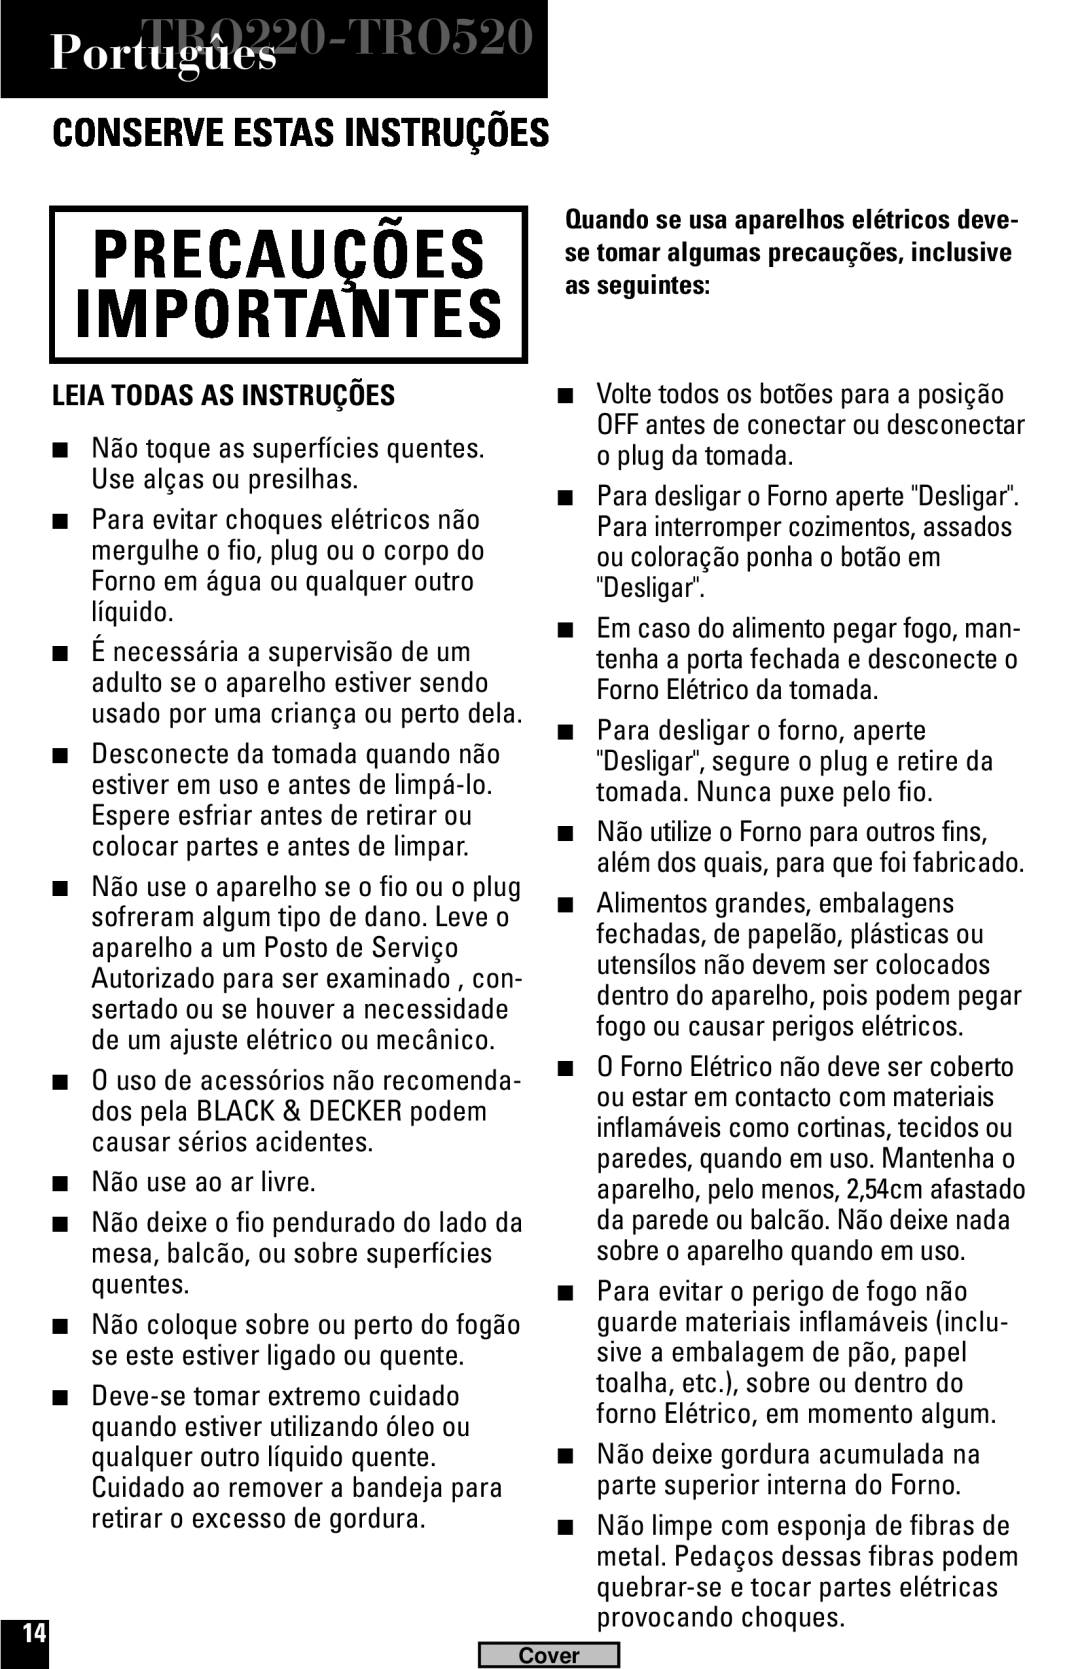 Black & Decker TRO220, TRO520 manual Portugûes, Conserve Estas Instruções, Leia Todas As Instruções, Importantes, Precauções 